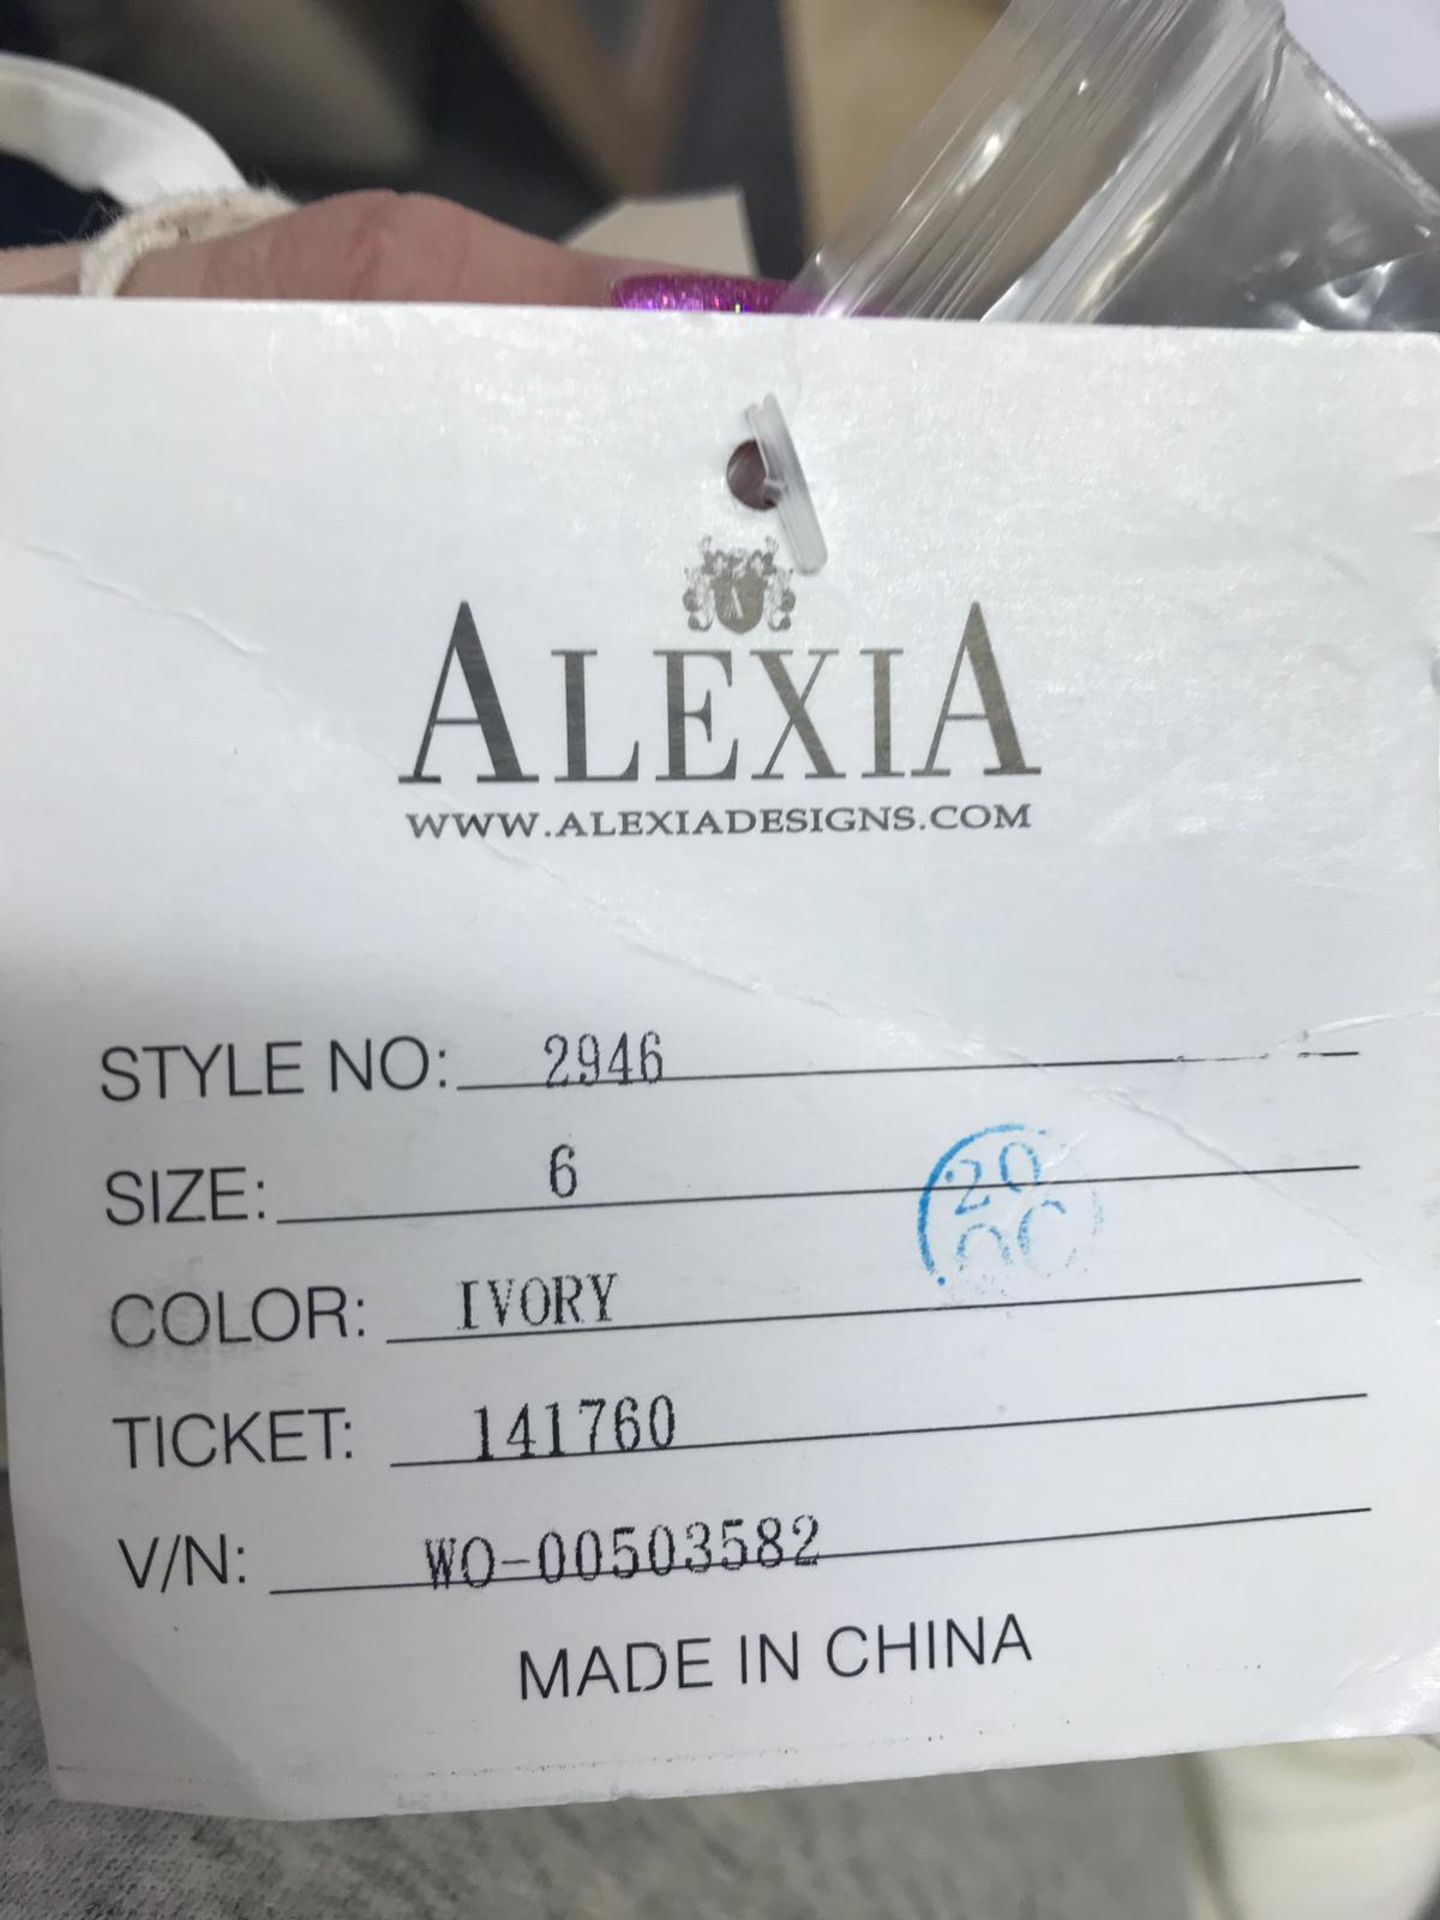 Alexia Wedding Dress Size 6 Ivory. Style 2946 - Image 3 of 5